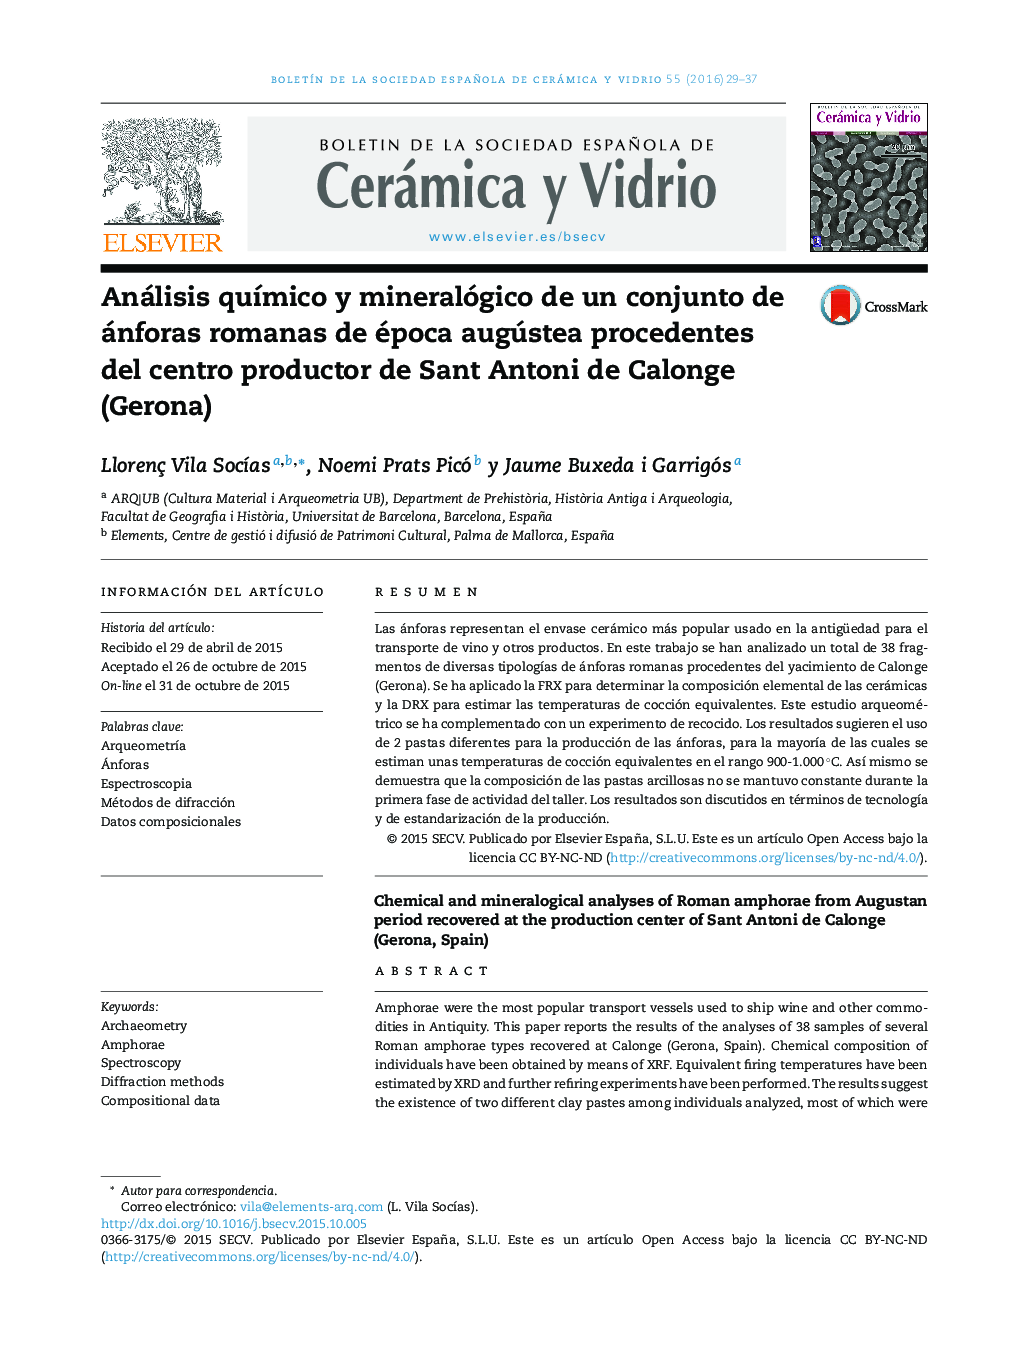 Análisis químico y mineralógico de un conjunto de ánforas romanas de época augústea procedentes del centro productor de Sant Antoni de Calonge (Gerona)